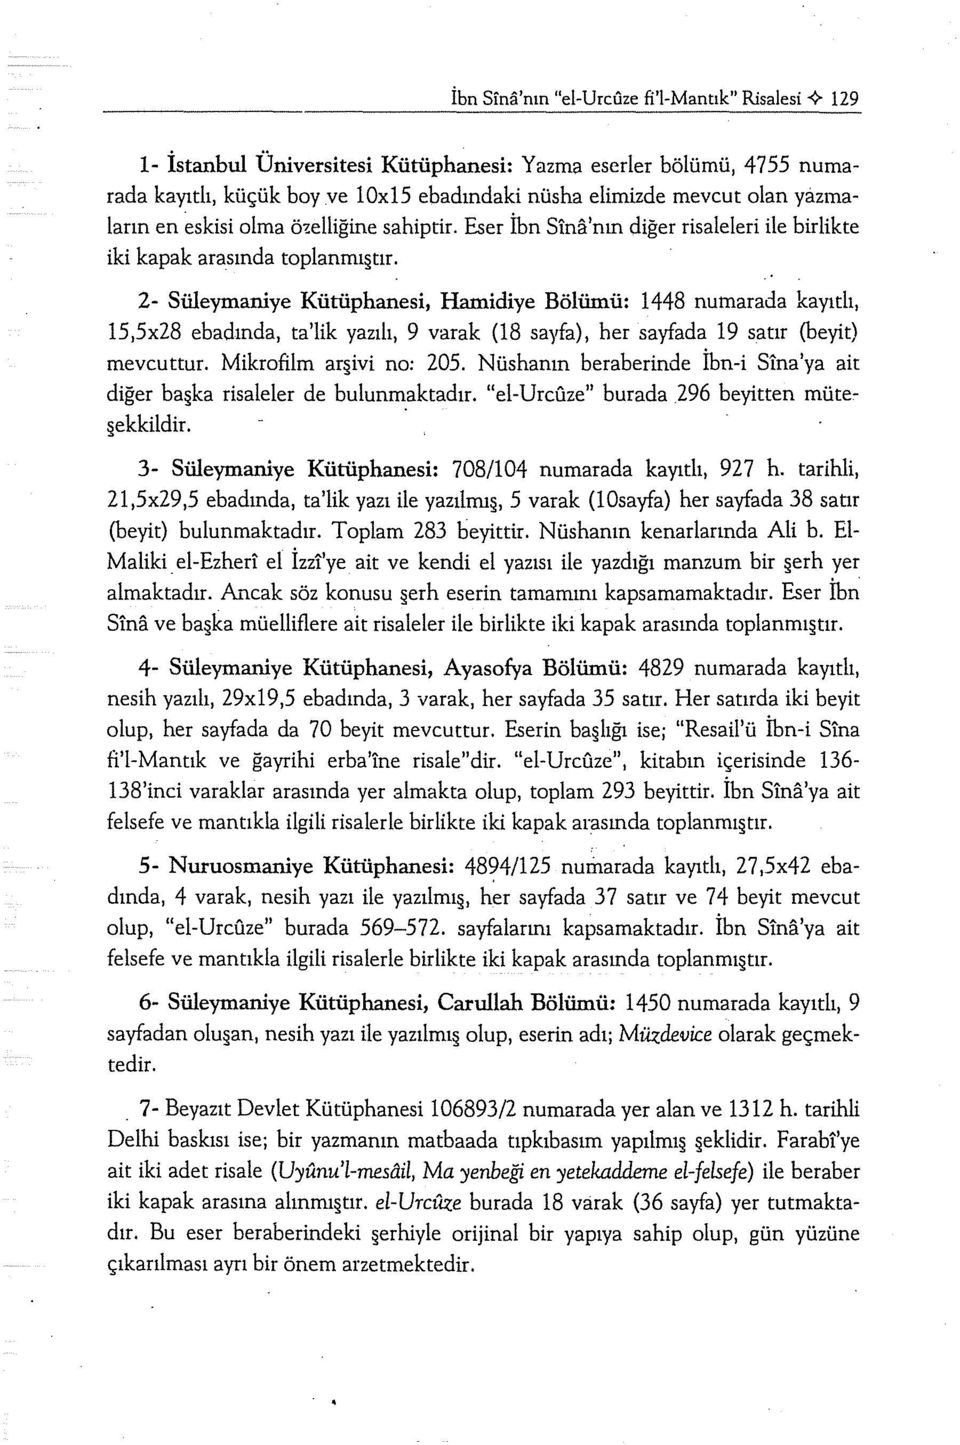 2- Süleymaniye Kütüphanesi, Hamidiye Bölümü: ı 448 nurnarada kayıtlı, 15,5x28 ebadında, ta'lik yazılı, 9 varak (18 sayfa), her sayfada ı9 satır (beyit) mevcuttur. Mikrofilm ar ivi no: 205.